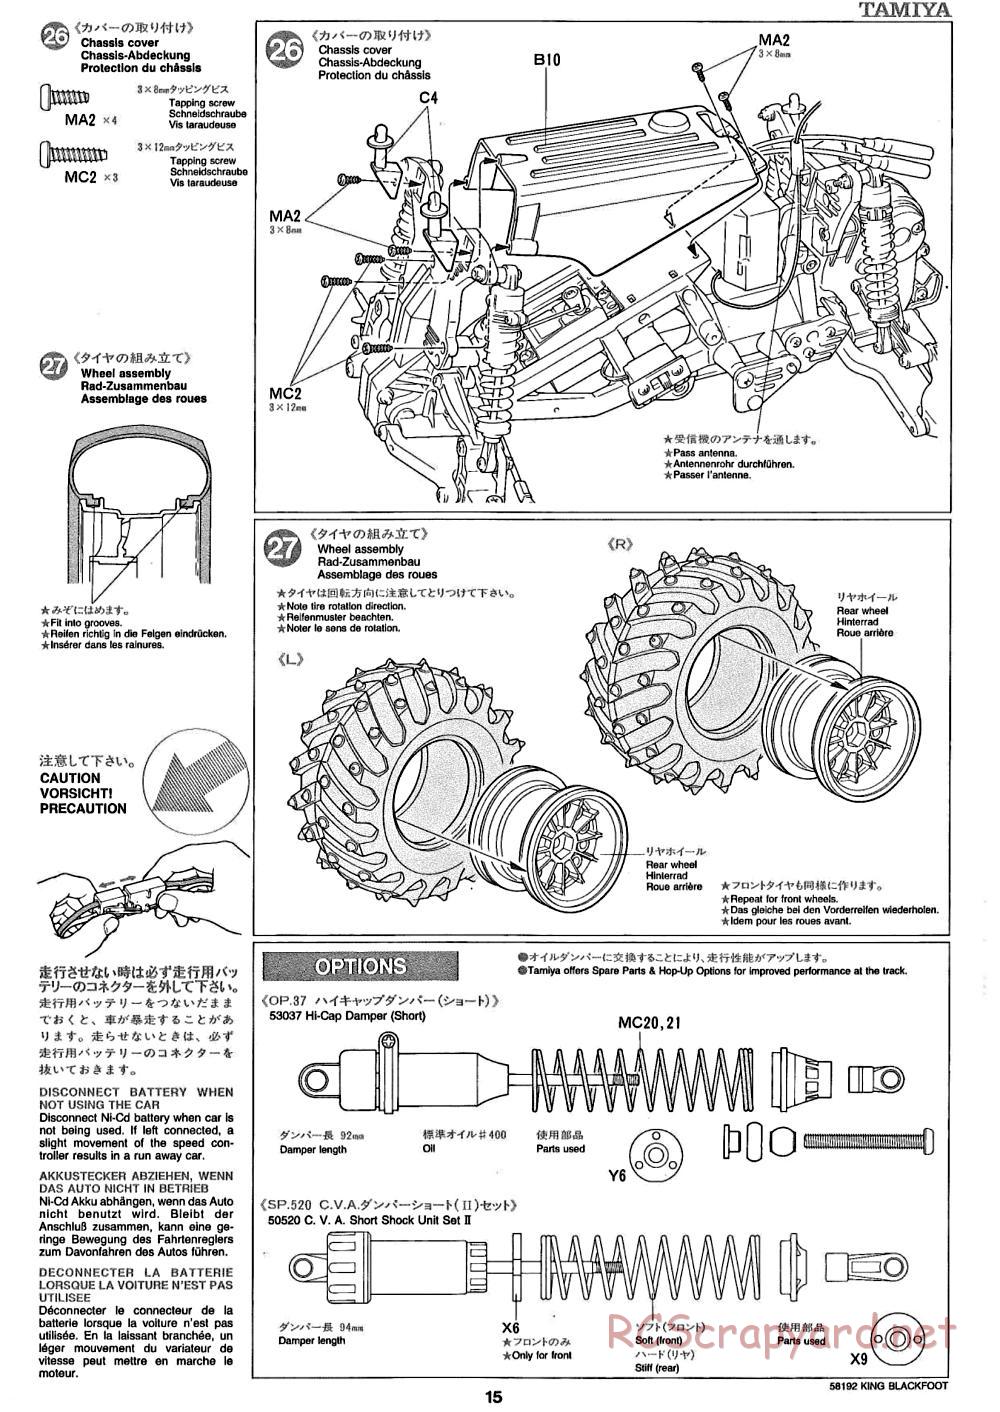 Tamiya - King Blackfoot Chassis - Manual - Page 15